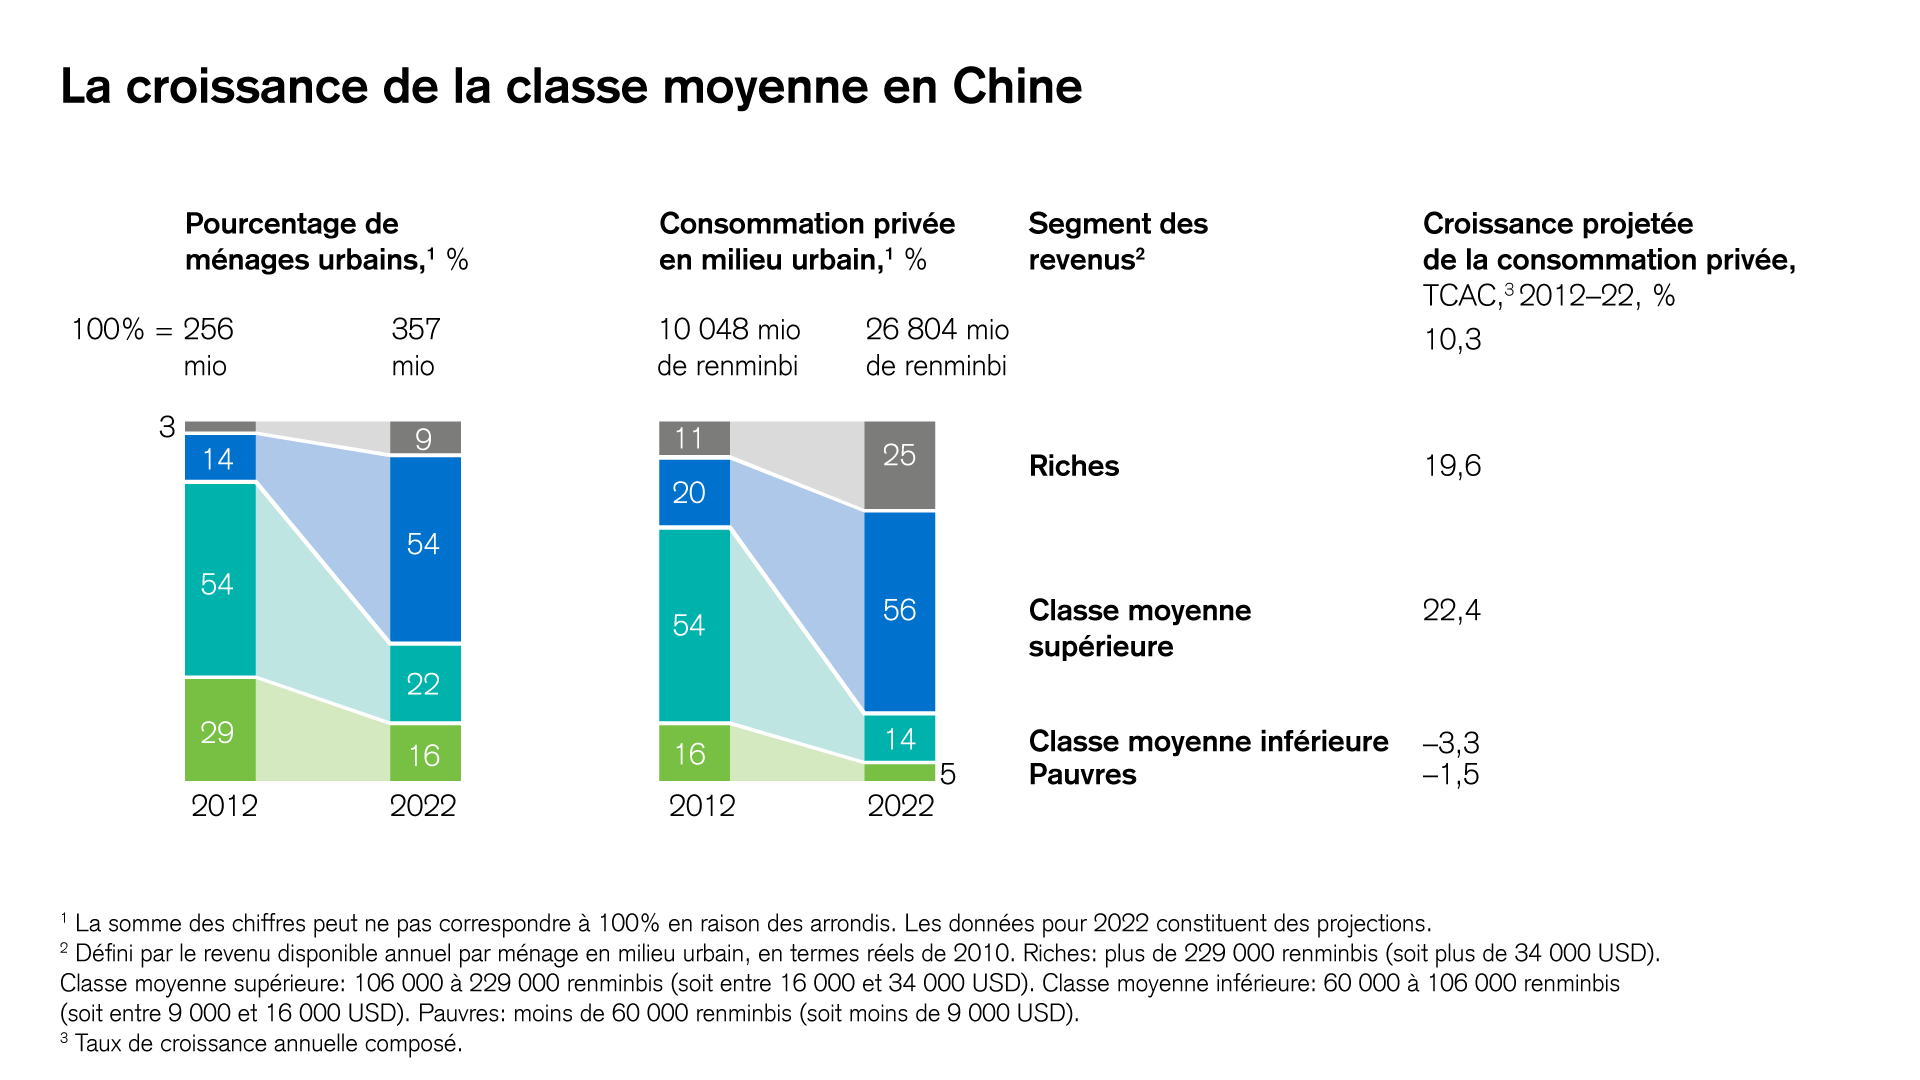 La croissance de la classe moyenne en Chine